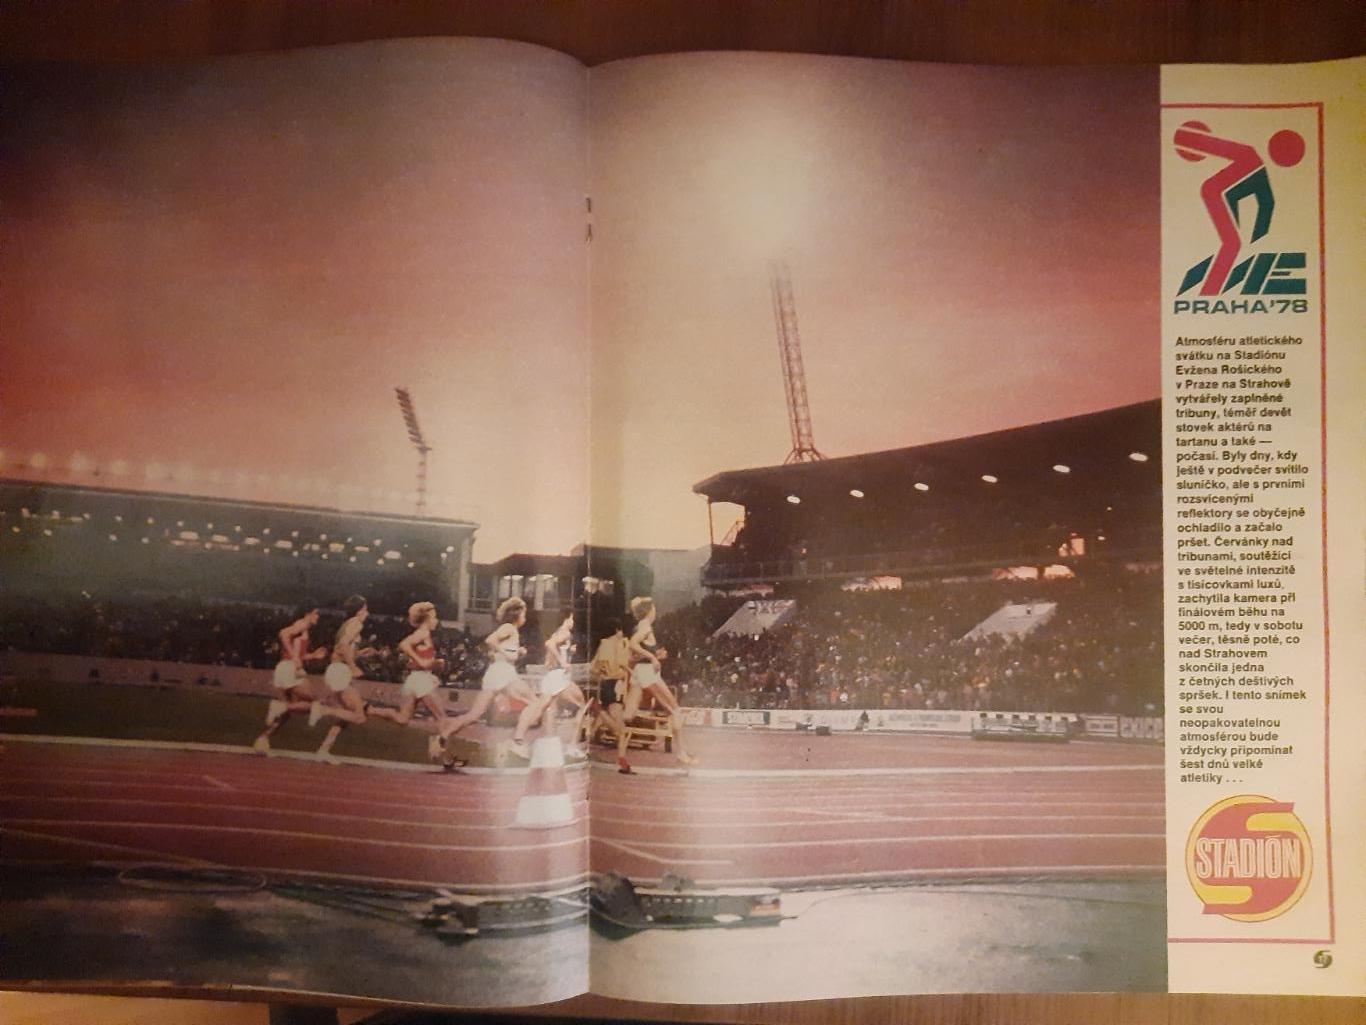 Стадион,Чехословакия #39(1317) 1978, спецвыпуск легкая атлетика ЧЕ. 3